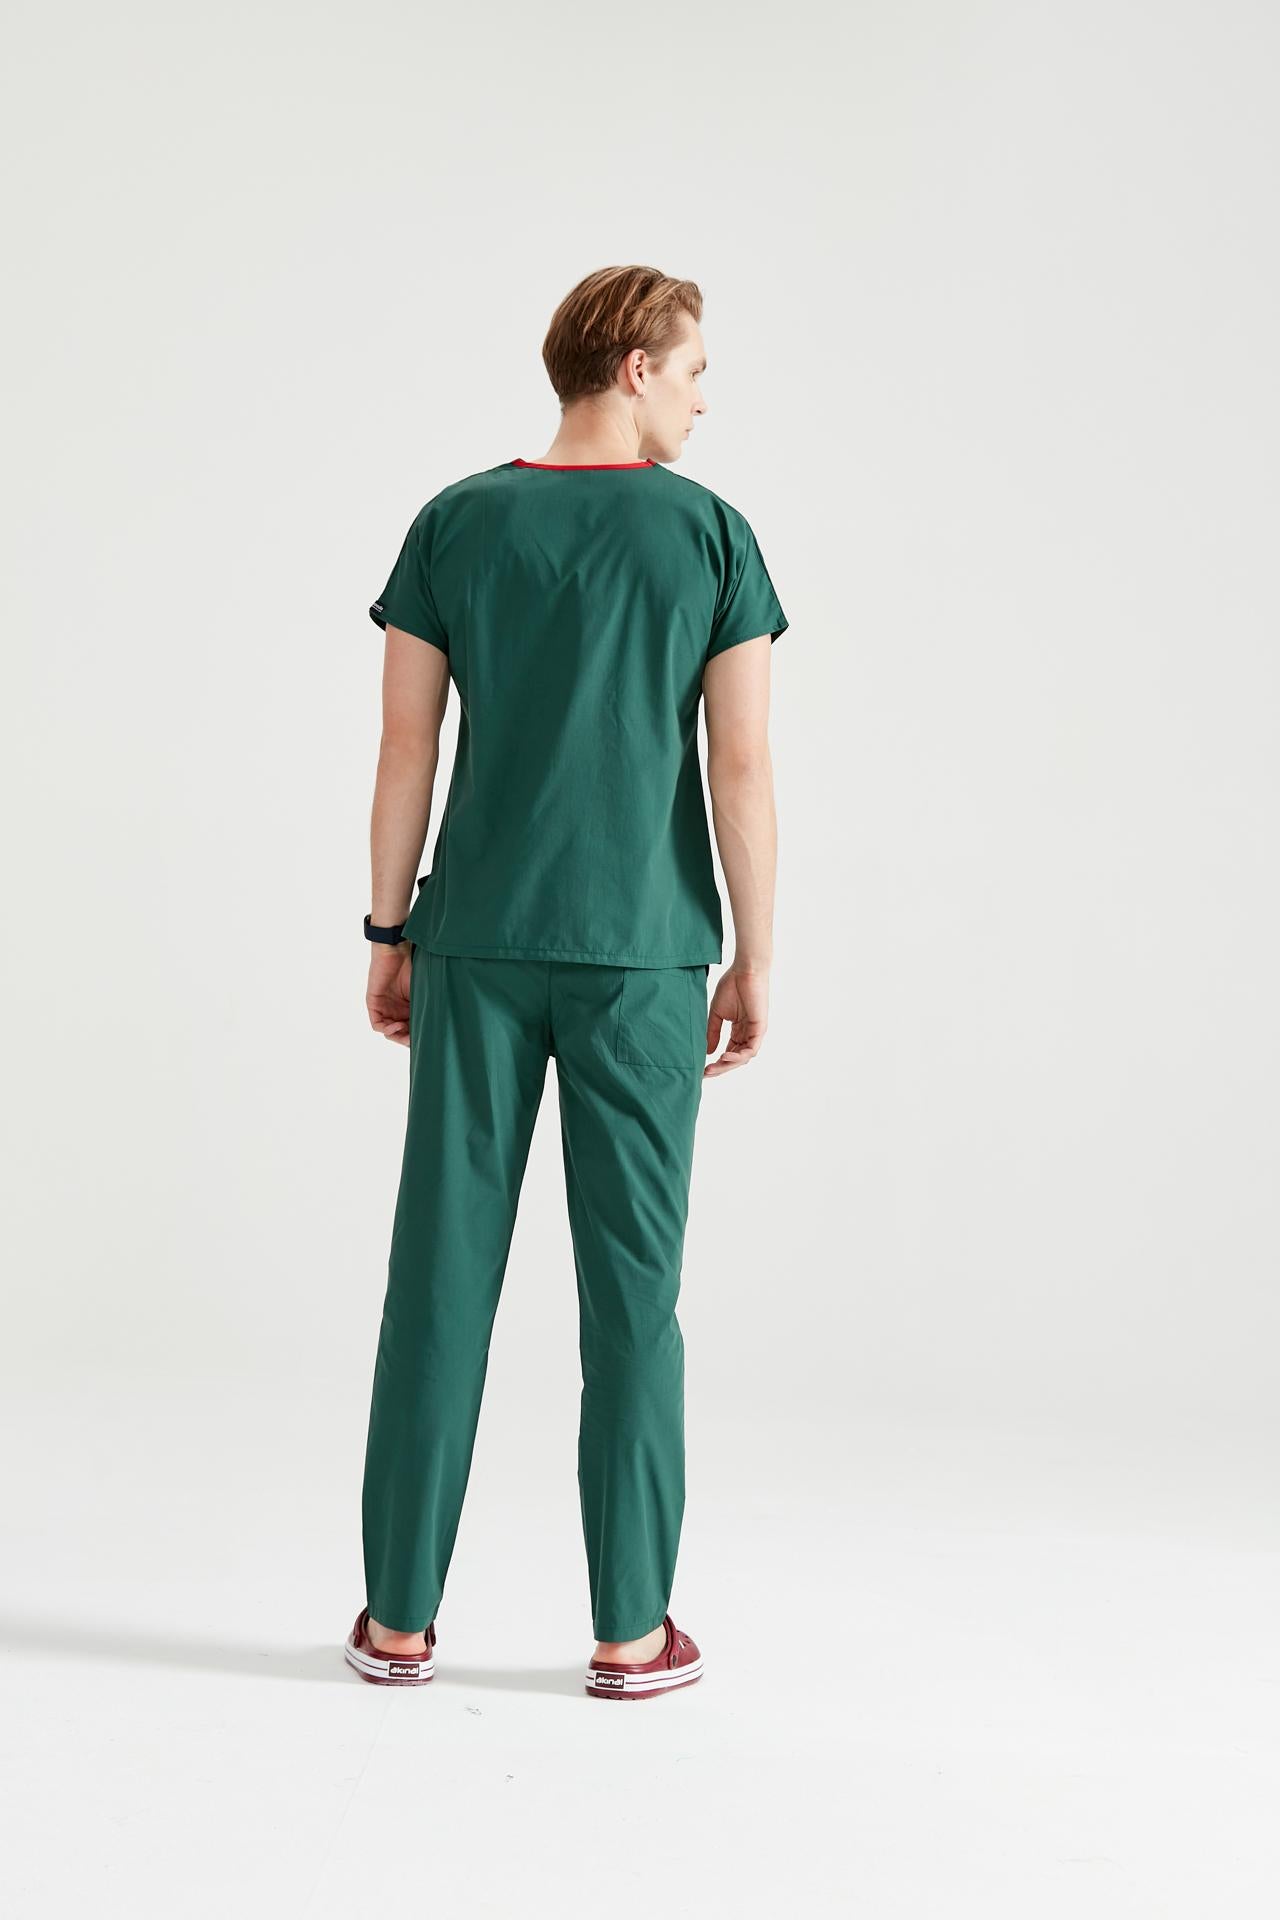 Asistent medical imbracat in costum medical barbati, elastan, verde kaki, vedere din spate